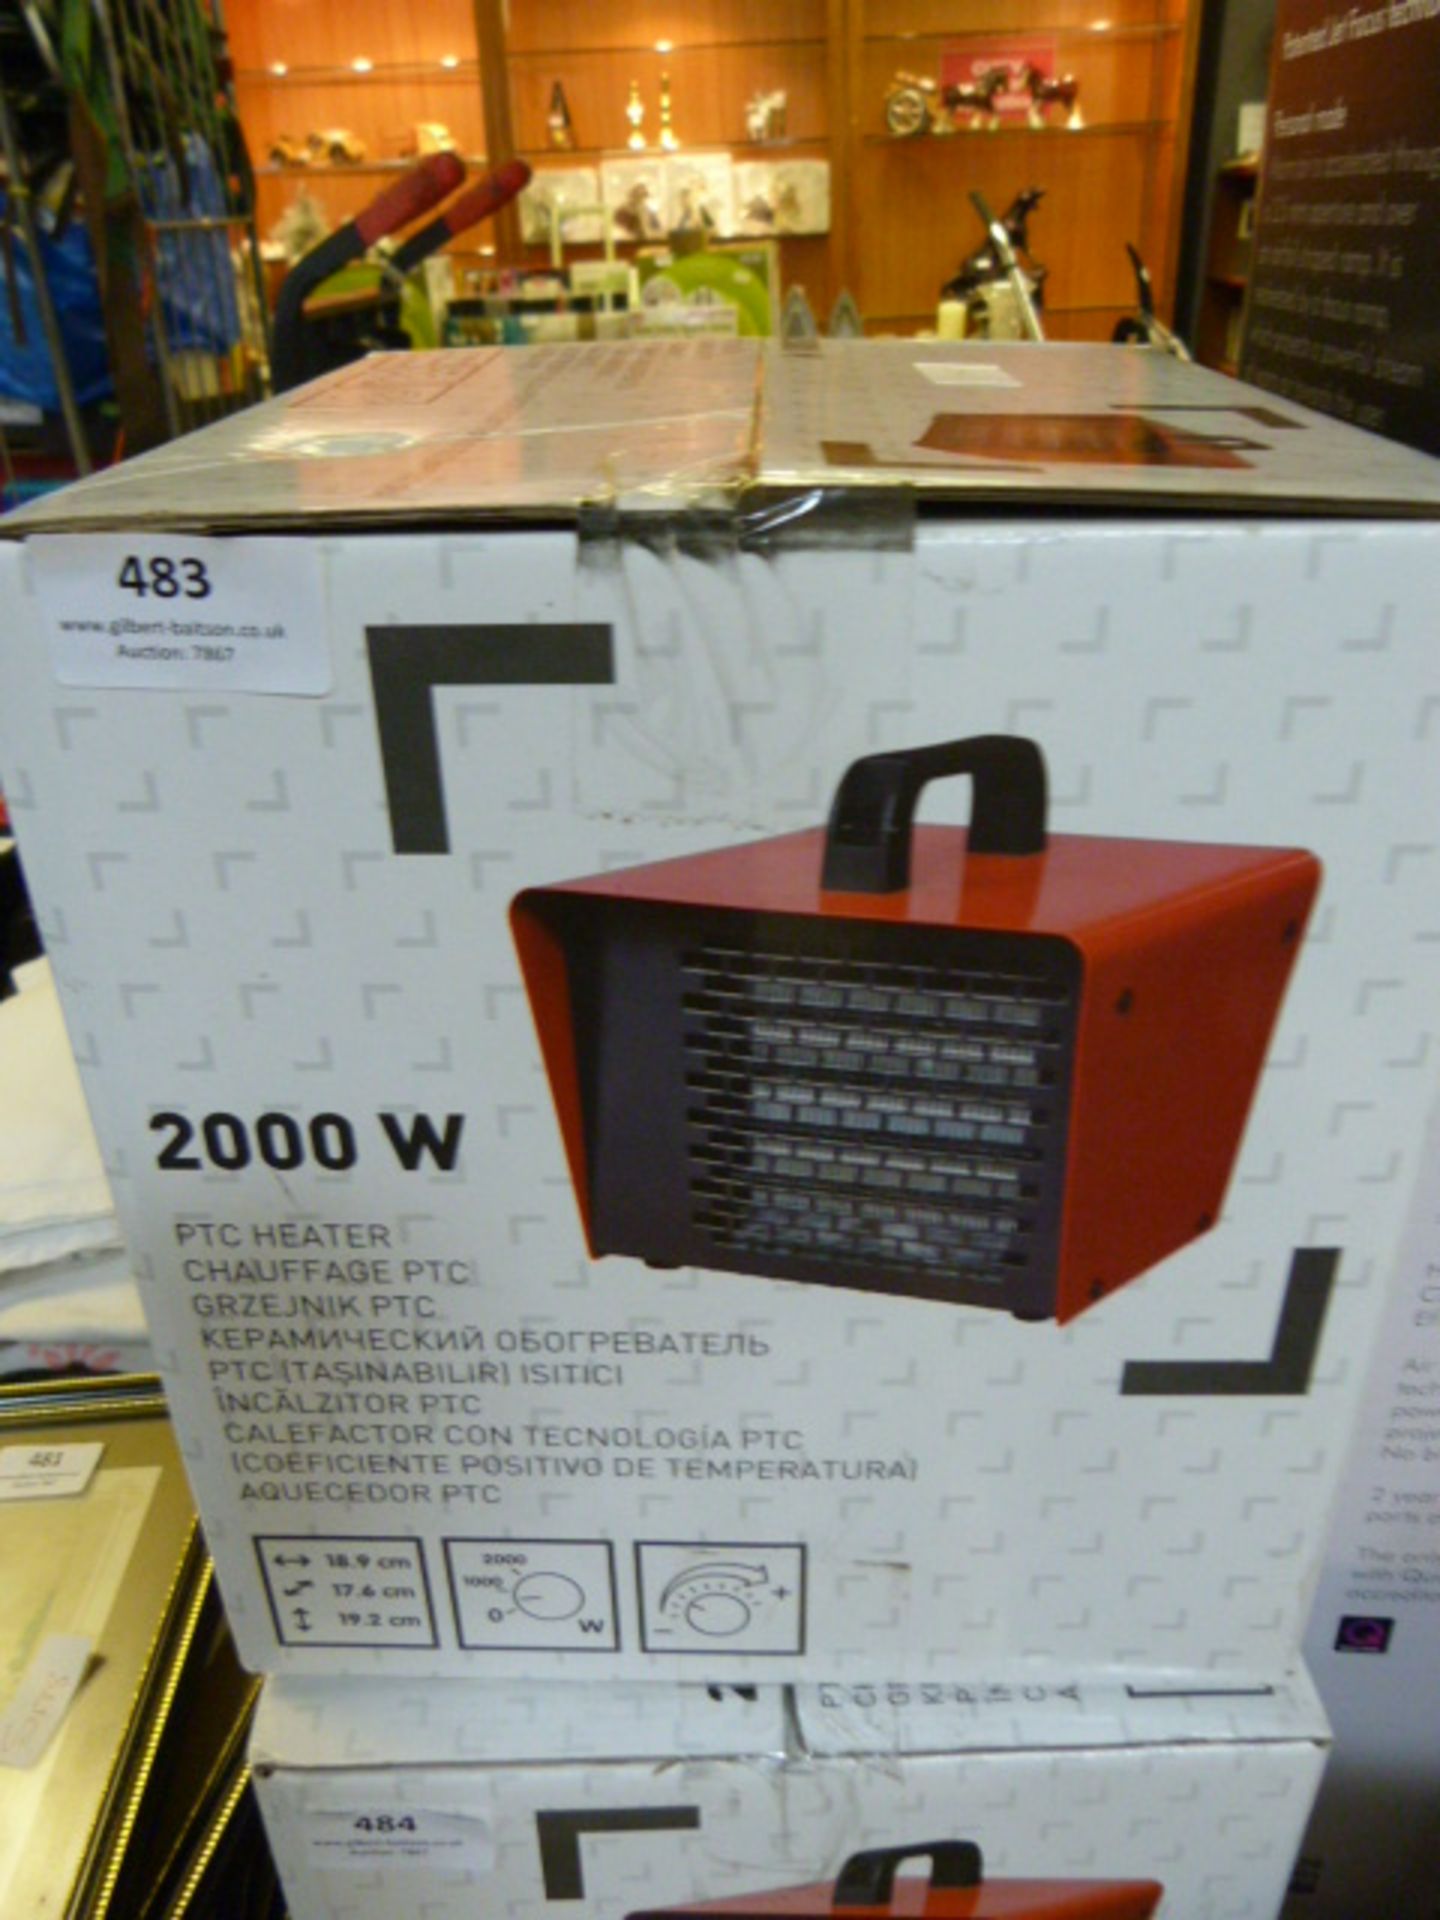 2000W PTC Heater